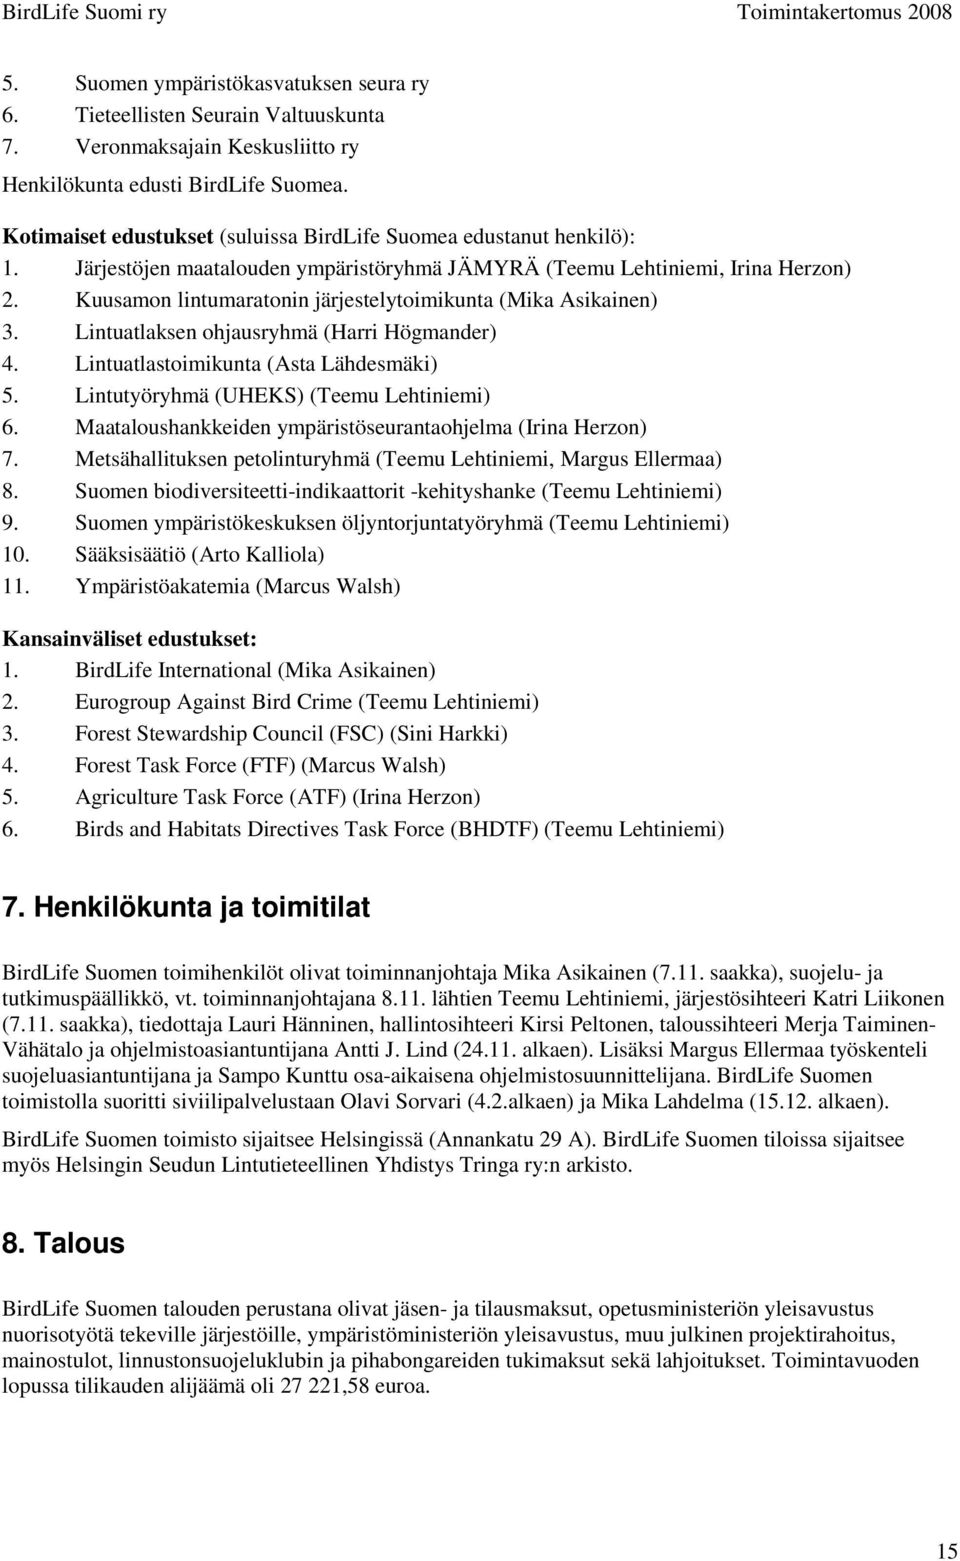 Kuusamon lintumaratonin järjestelytoimikunta (Mika Asikainen) 3. Lintuatlaksen ohjausryhmä (Harri Högmander) 4. Lintuatlastoimikunta (Asta Lähdesmäki) 5. Lintutyöryhmä (UHEKS) (Teemu Lehtiniemi) 6.